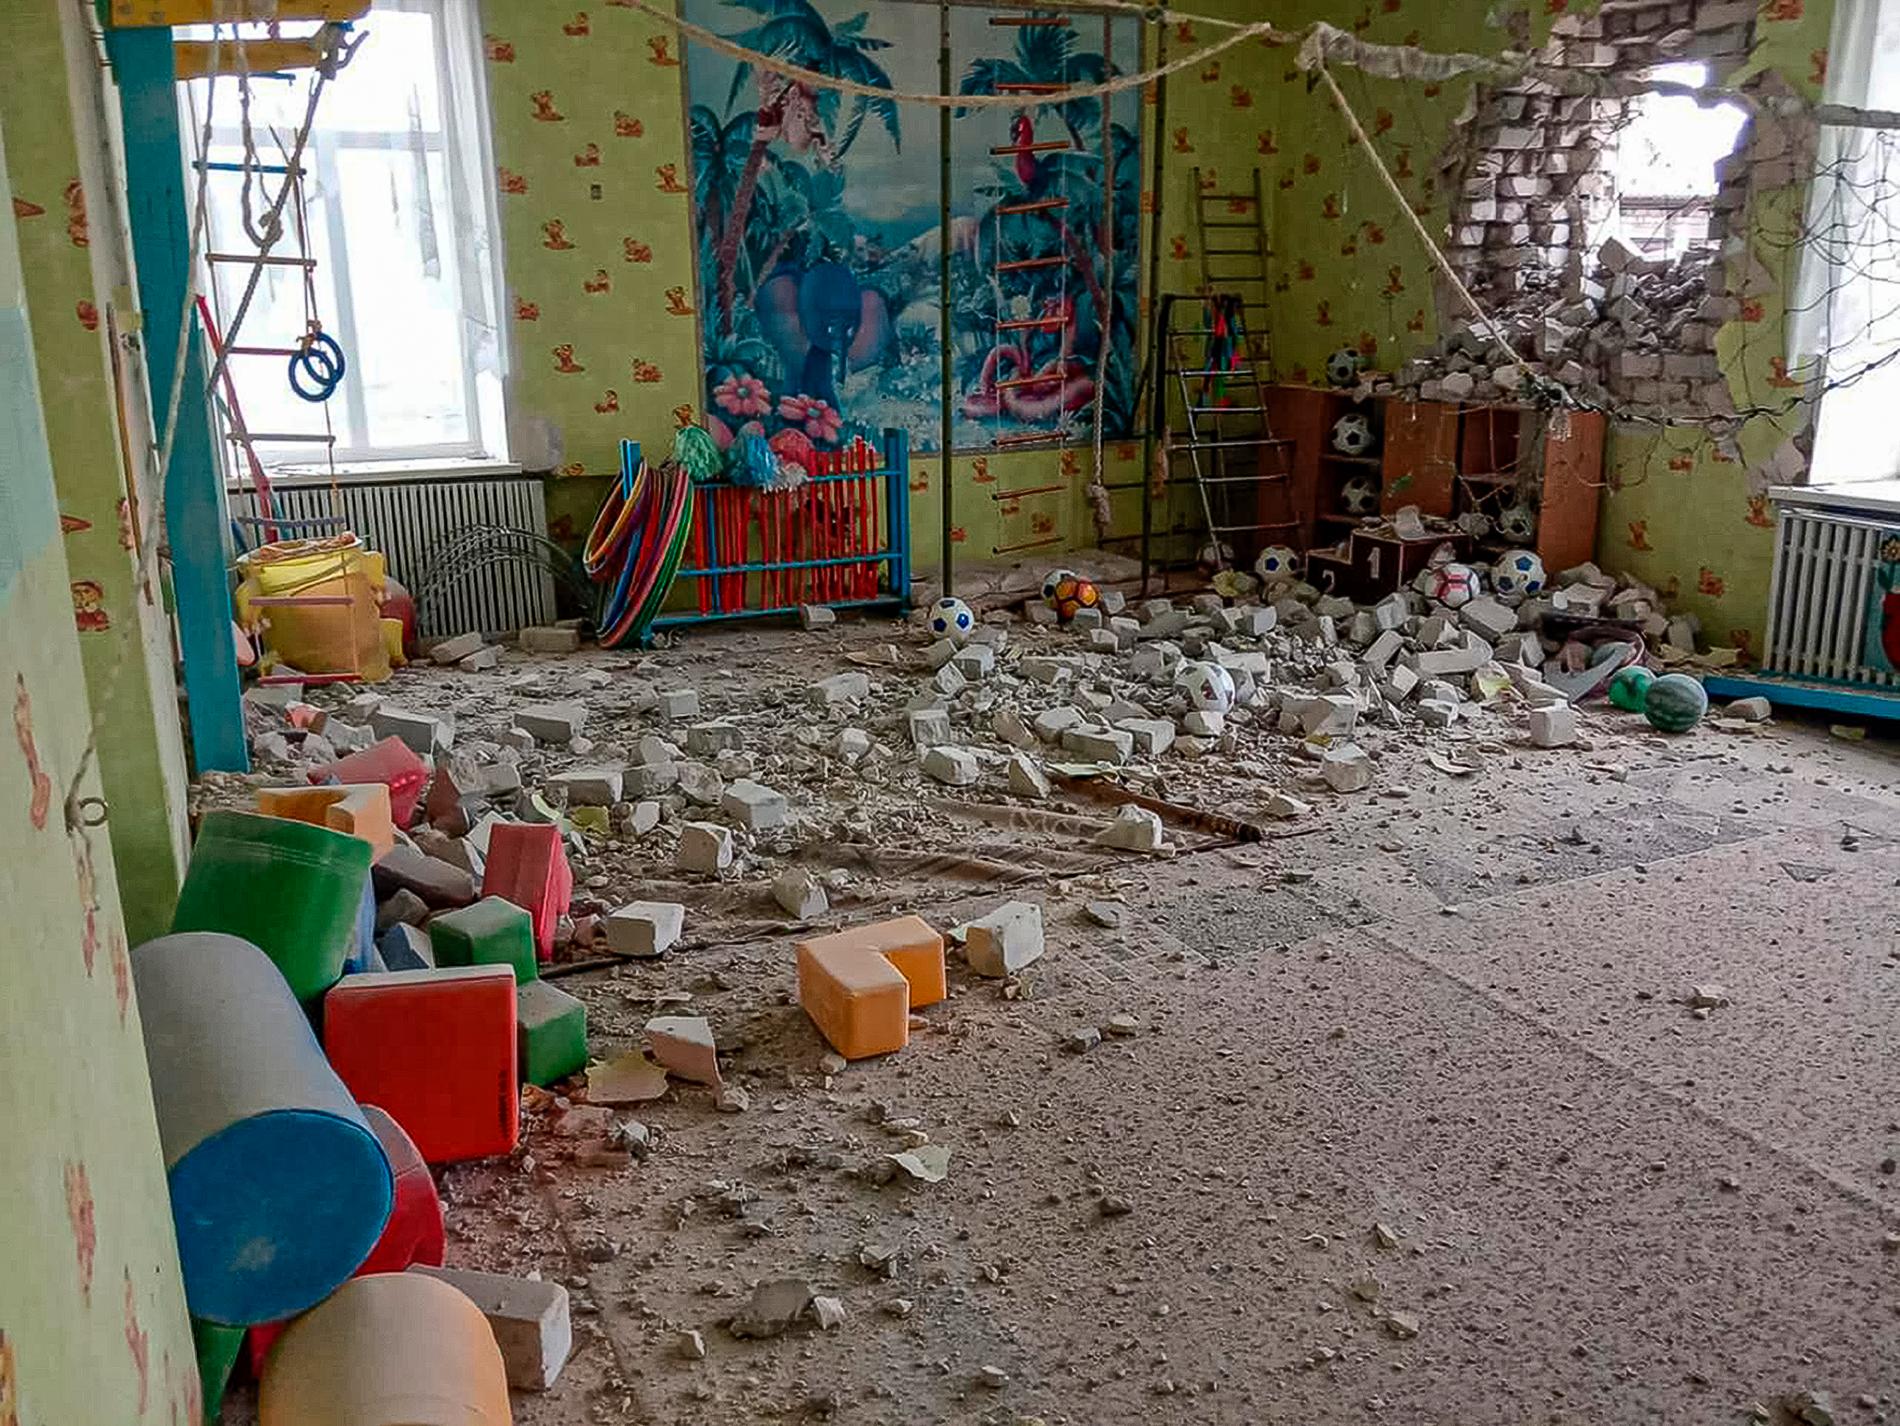 På bilder från platsen kan man skymta ett stort hål i förskolans tegelfasad. På golvet ligger leksaker blandat med tegel och damm.